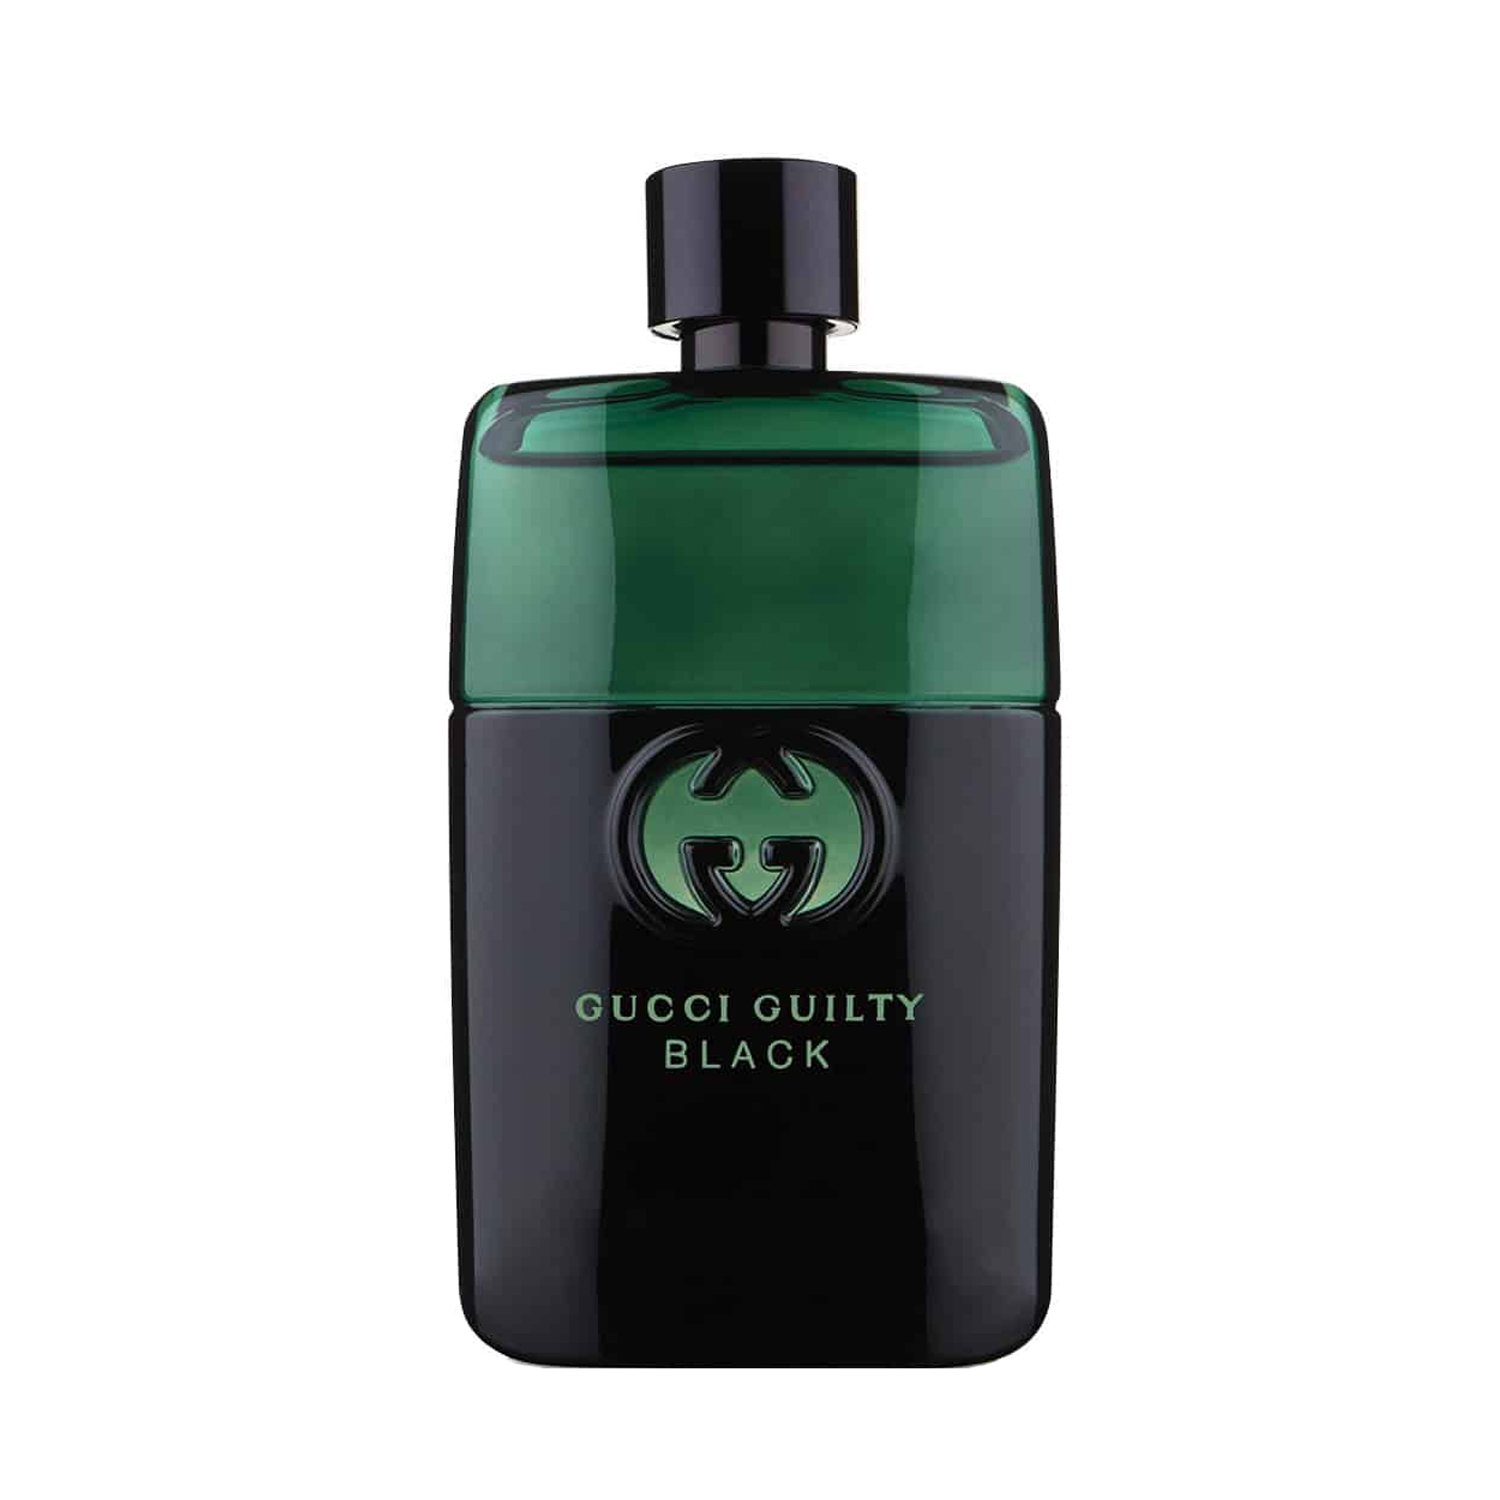 Gucci Guilty Black Pour Homme - Nước hoa chính hãng 100% nhập khẩu Pháp,  Mỹ…Giá tốt tại Perfume168